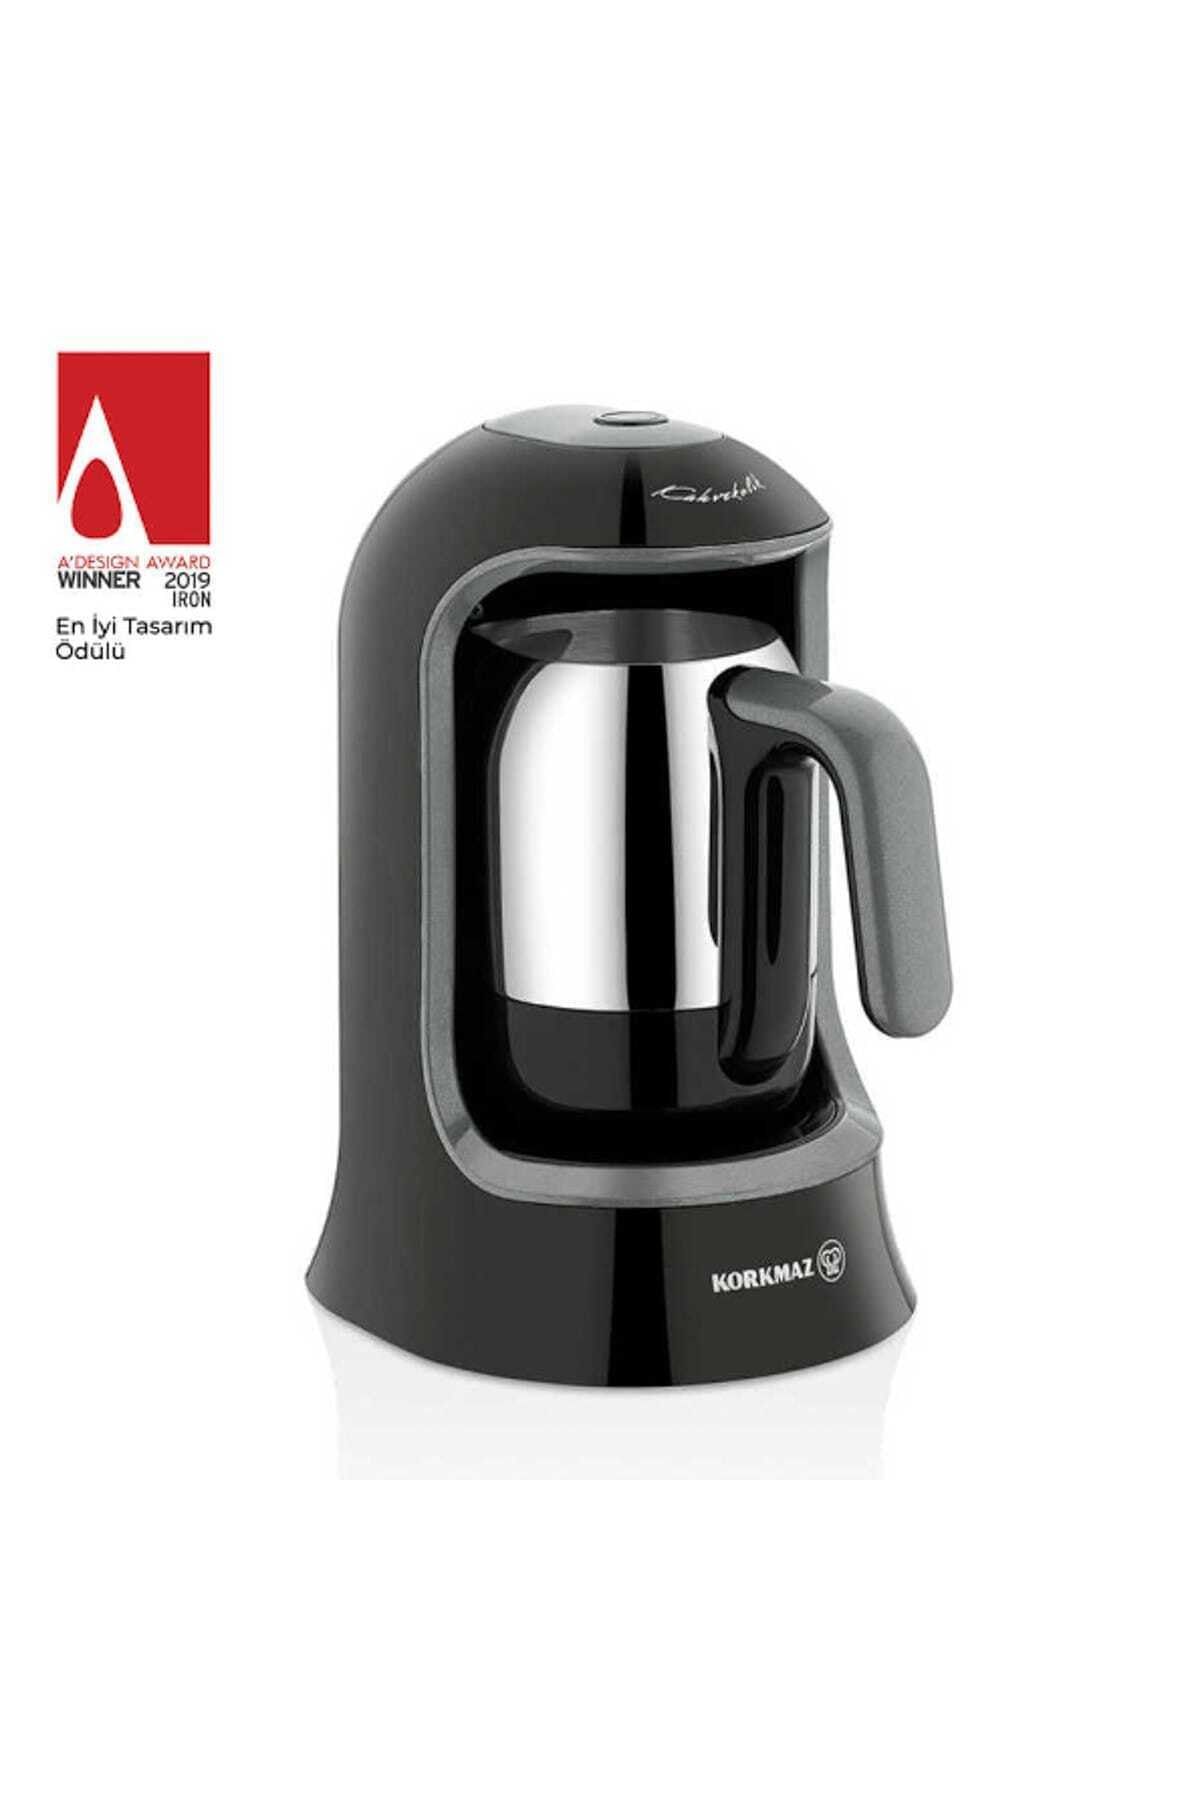 KORKMAZ A860-05 Korkmaz Kahvekolik Siyah Otomatik Kahve Makinesi